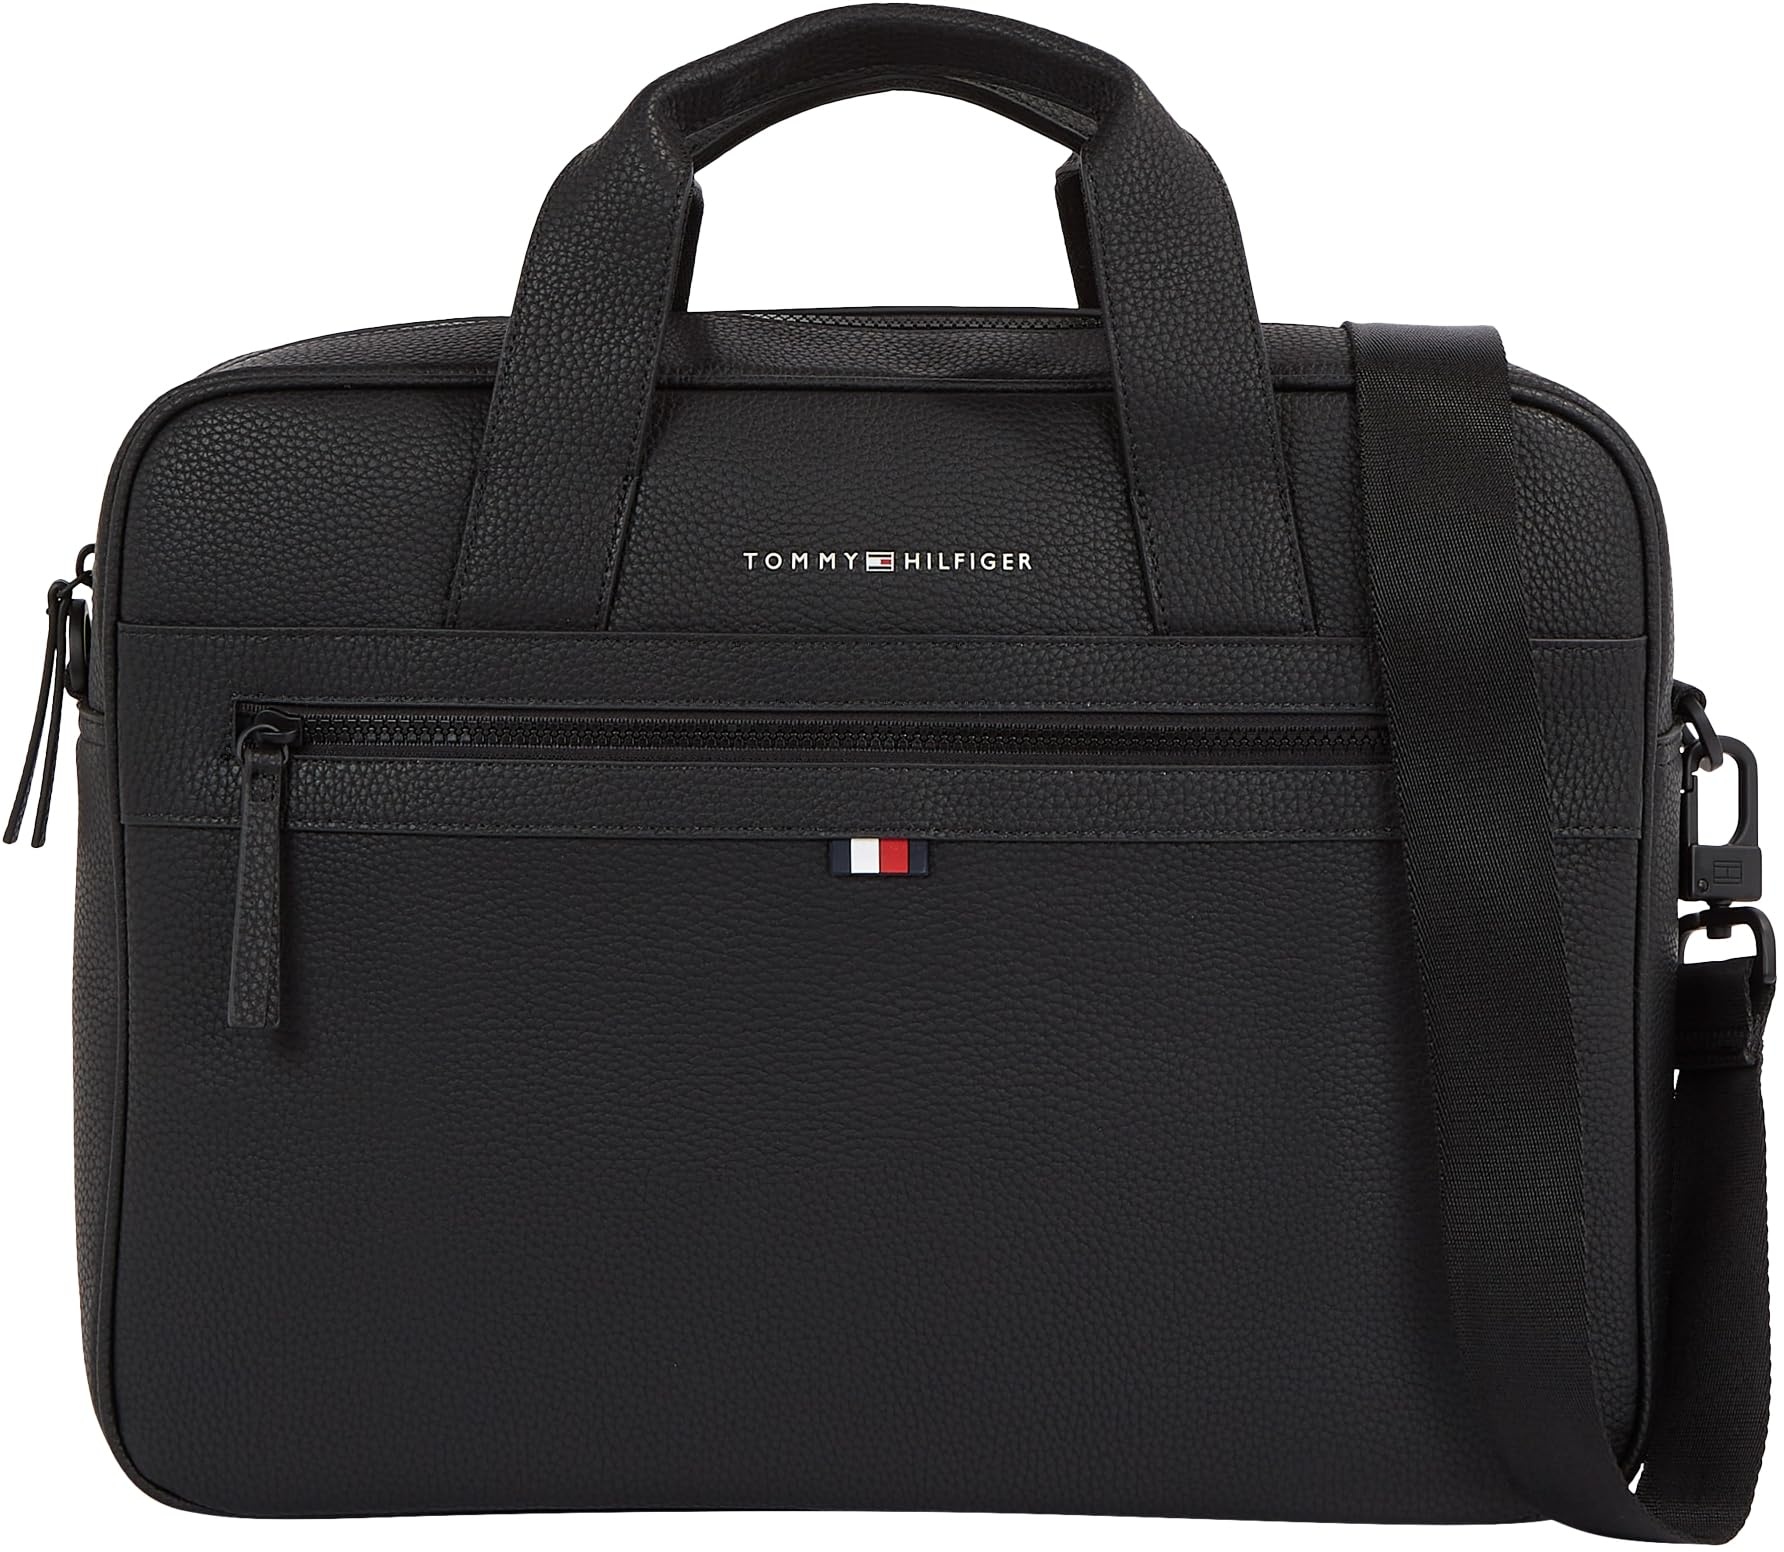 Tommy Hilfiger Herren Laptoptasche Essential PU Computer Bag 14 Zoll, Schwarz (Black), Einheitsgröße